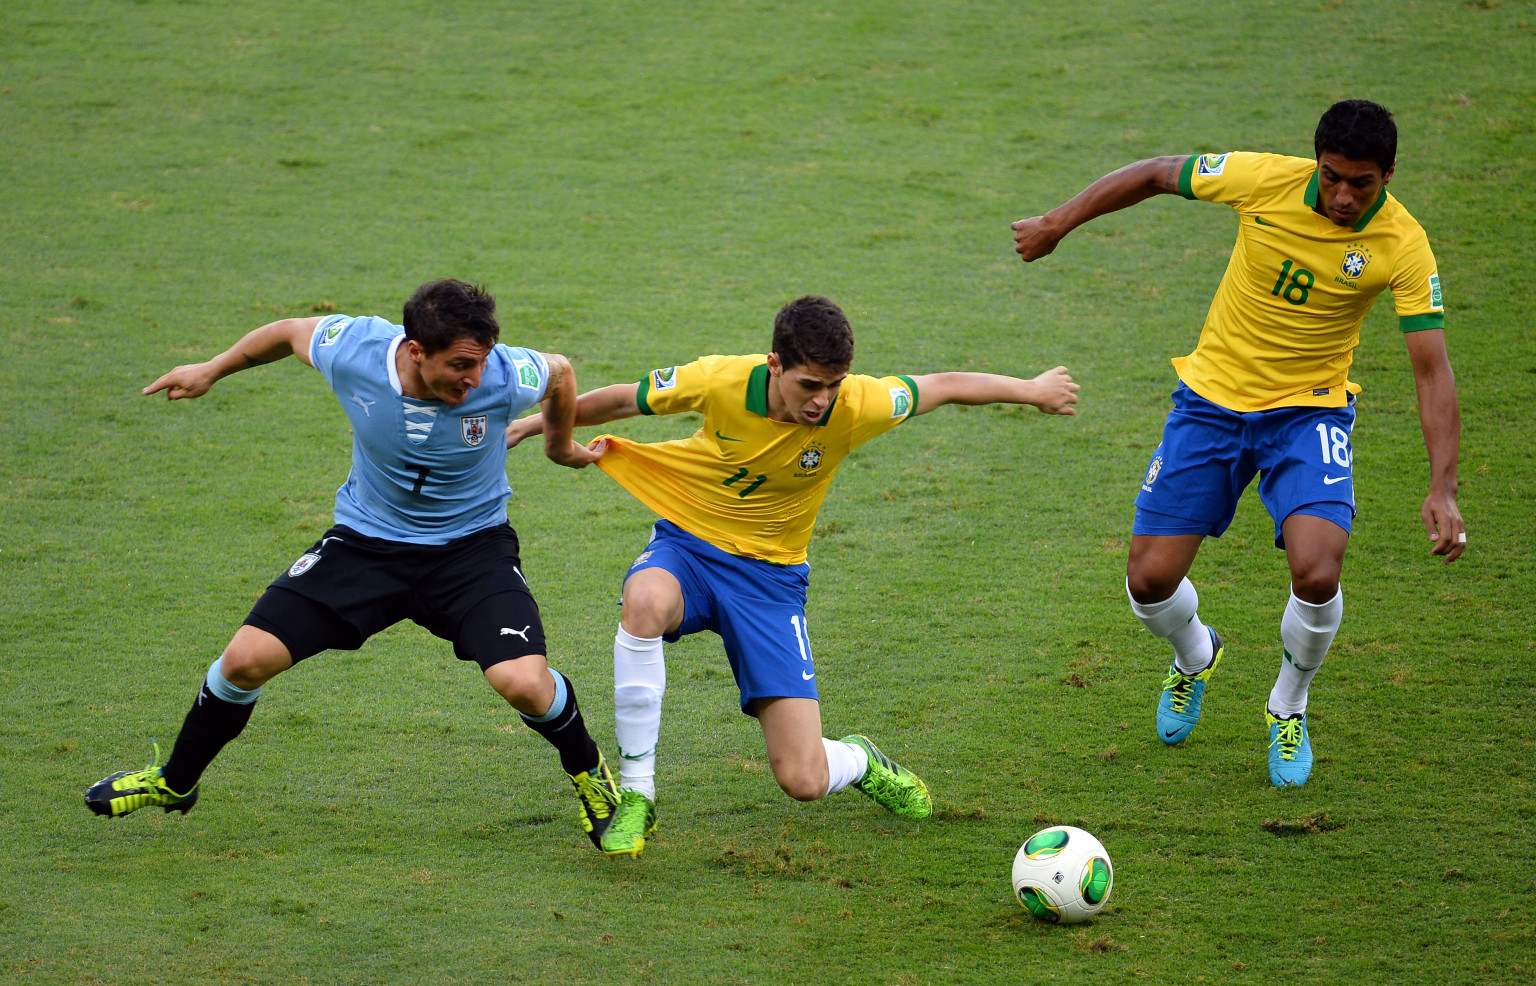 Brasil vs Uruguay En Vivo Minuto a minuto en directo todo lo que